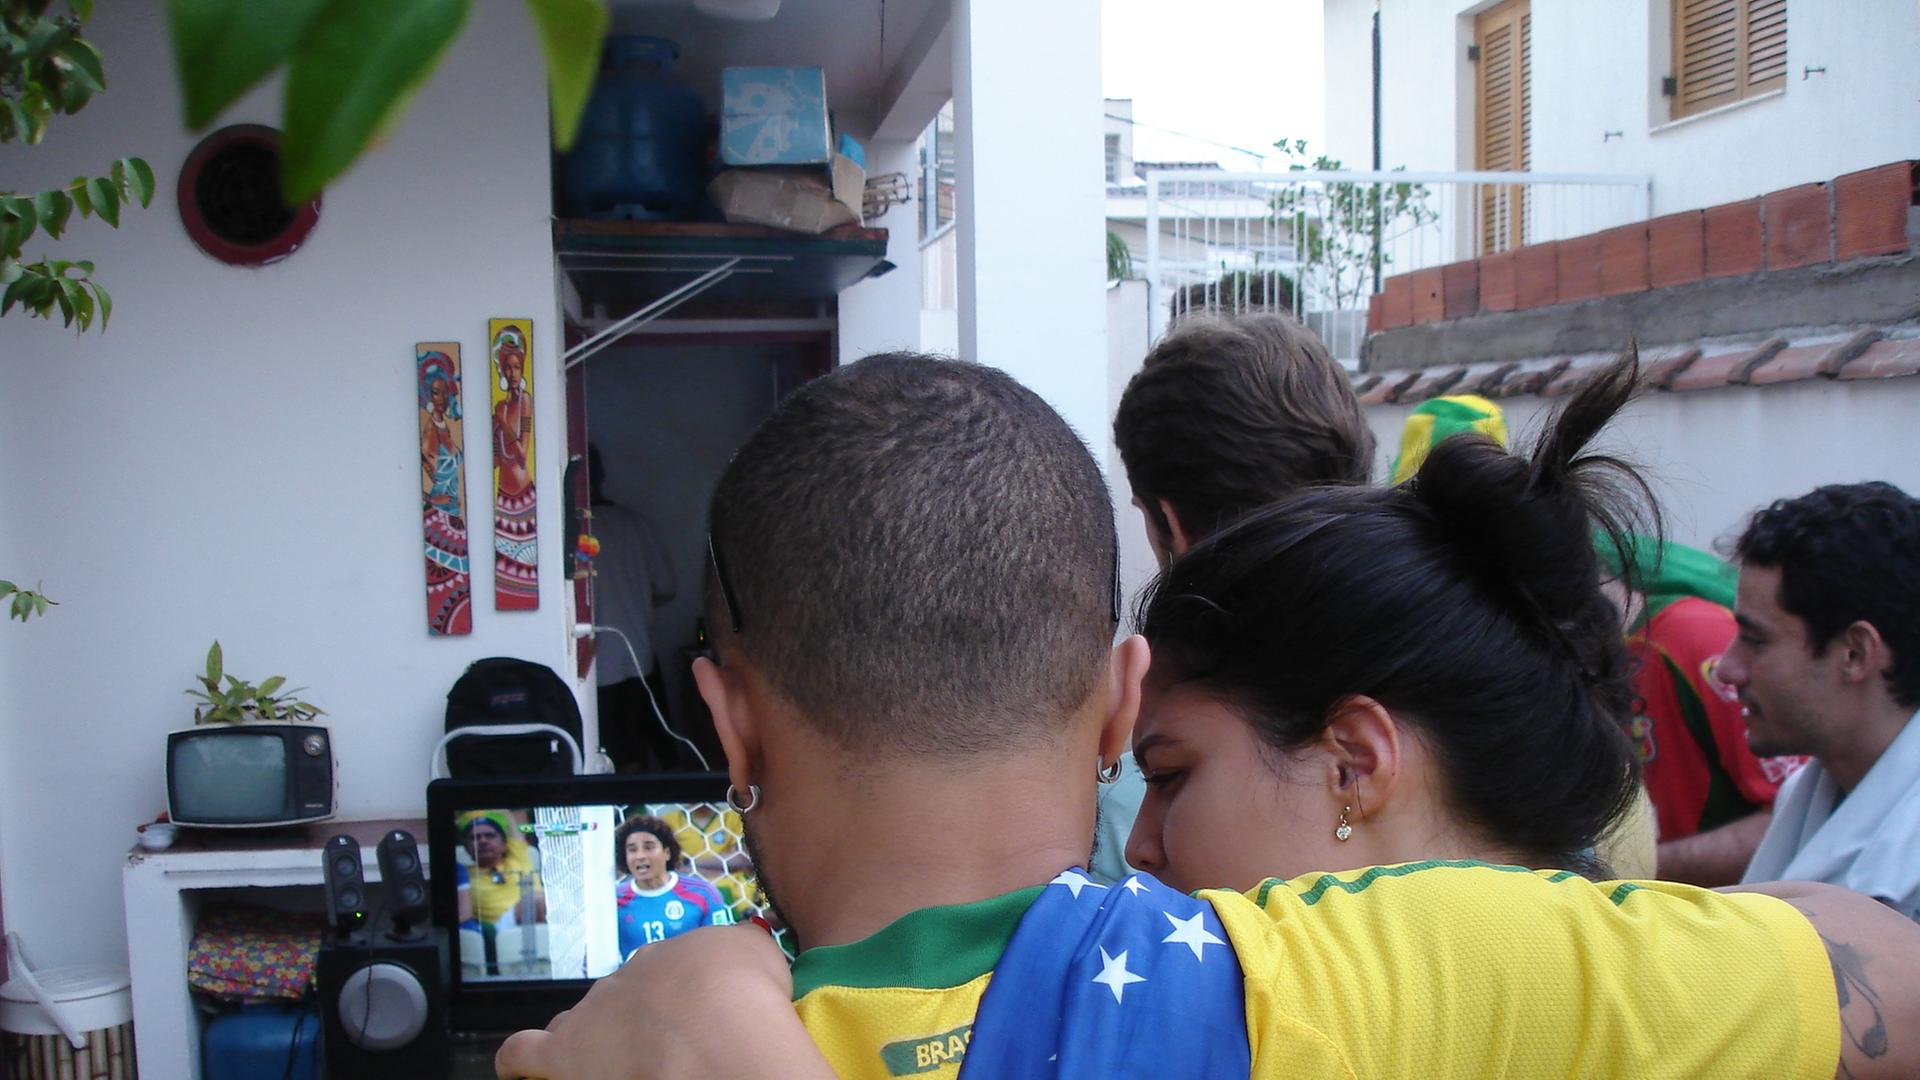 Zwei Brasilien-Fans beim Fußballgucken